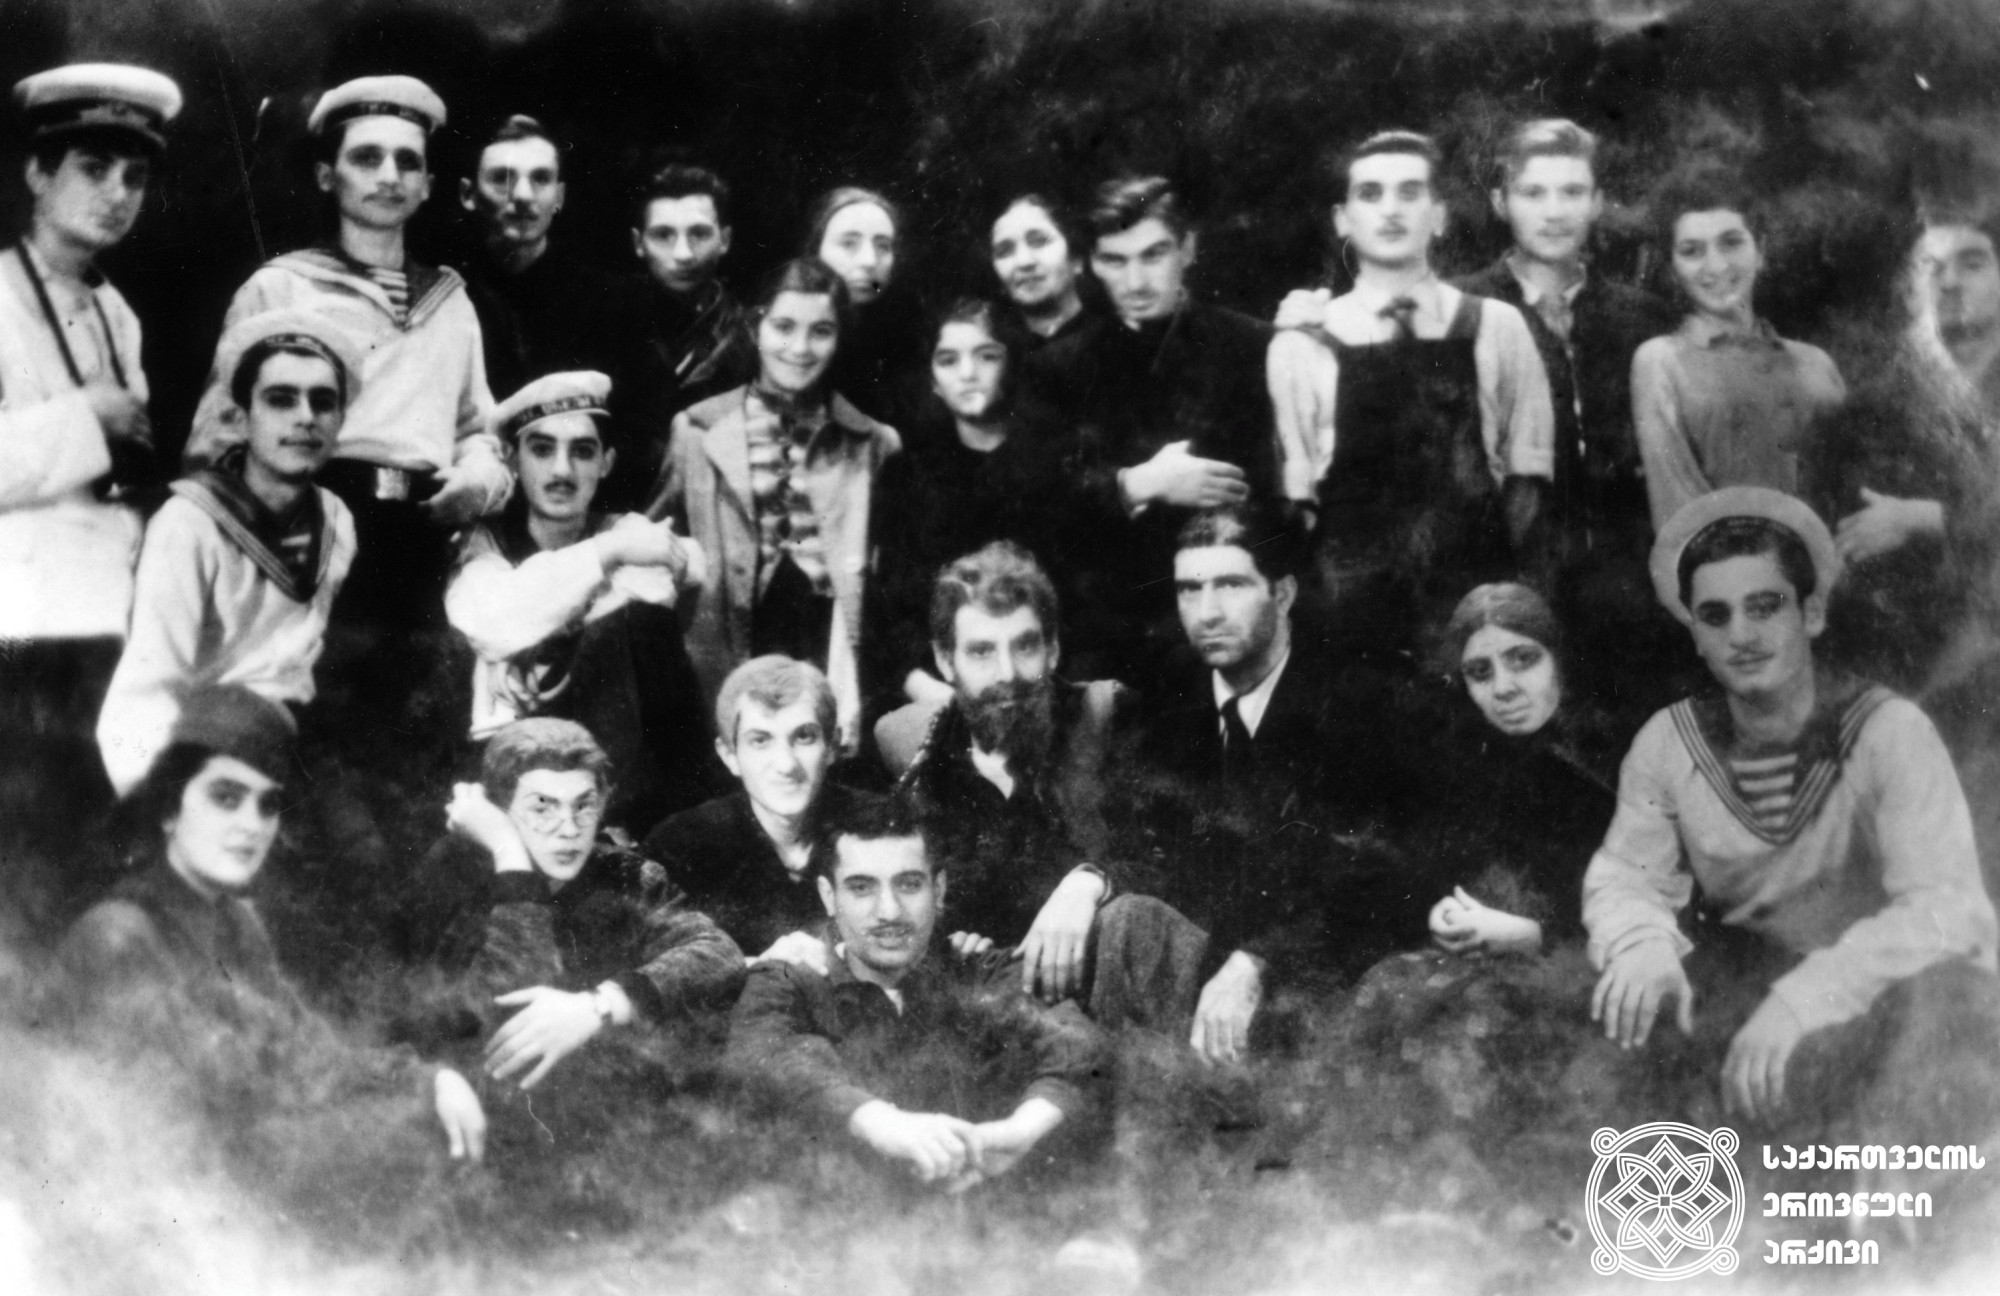 პიონერთა სასახლის თეატრალური წრის წევრები. მარჯვნიდან მეოთხე დგას რამაზ ჩხიკვაძე. <br>
1944-45 წწ. <br>

Theater Circle members of the Pioneers' Palace. Ramaz Chkhikvadze is fourth from the right. <br>
1944-45.